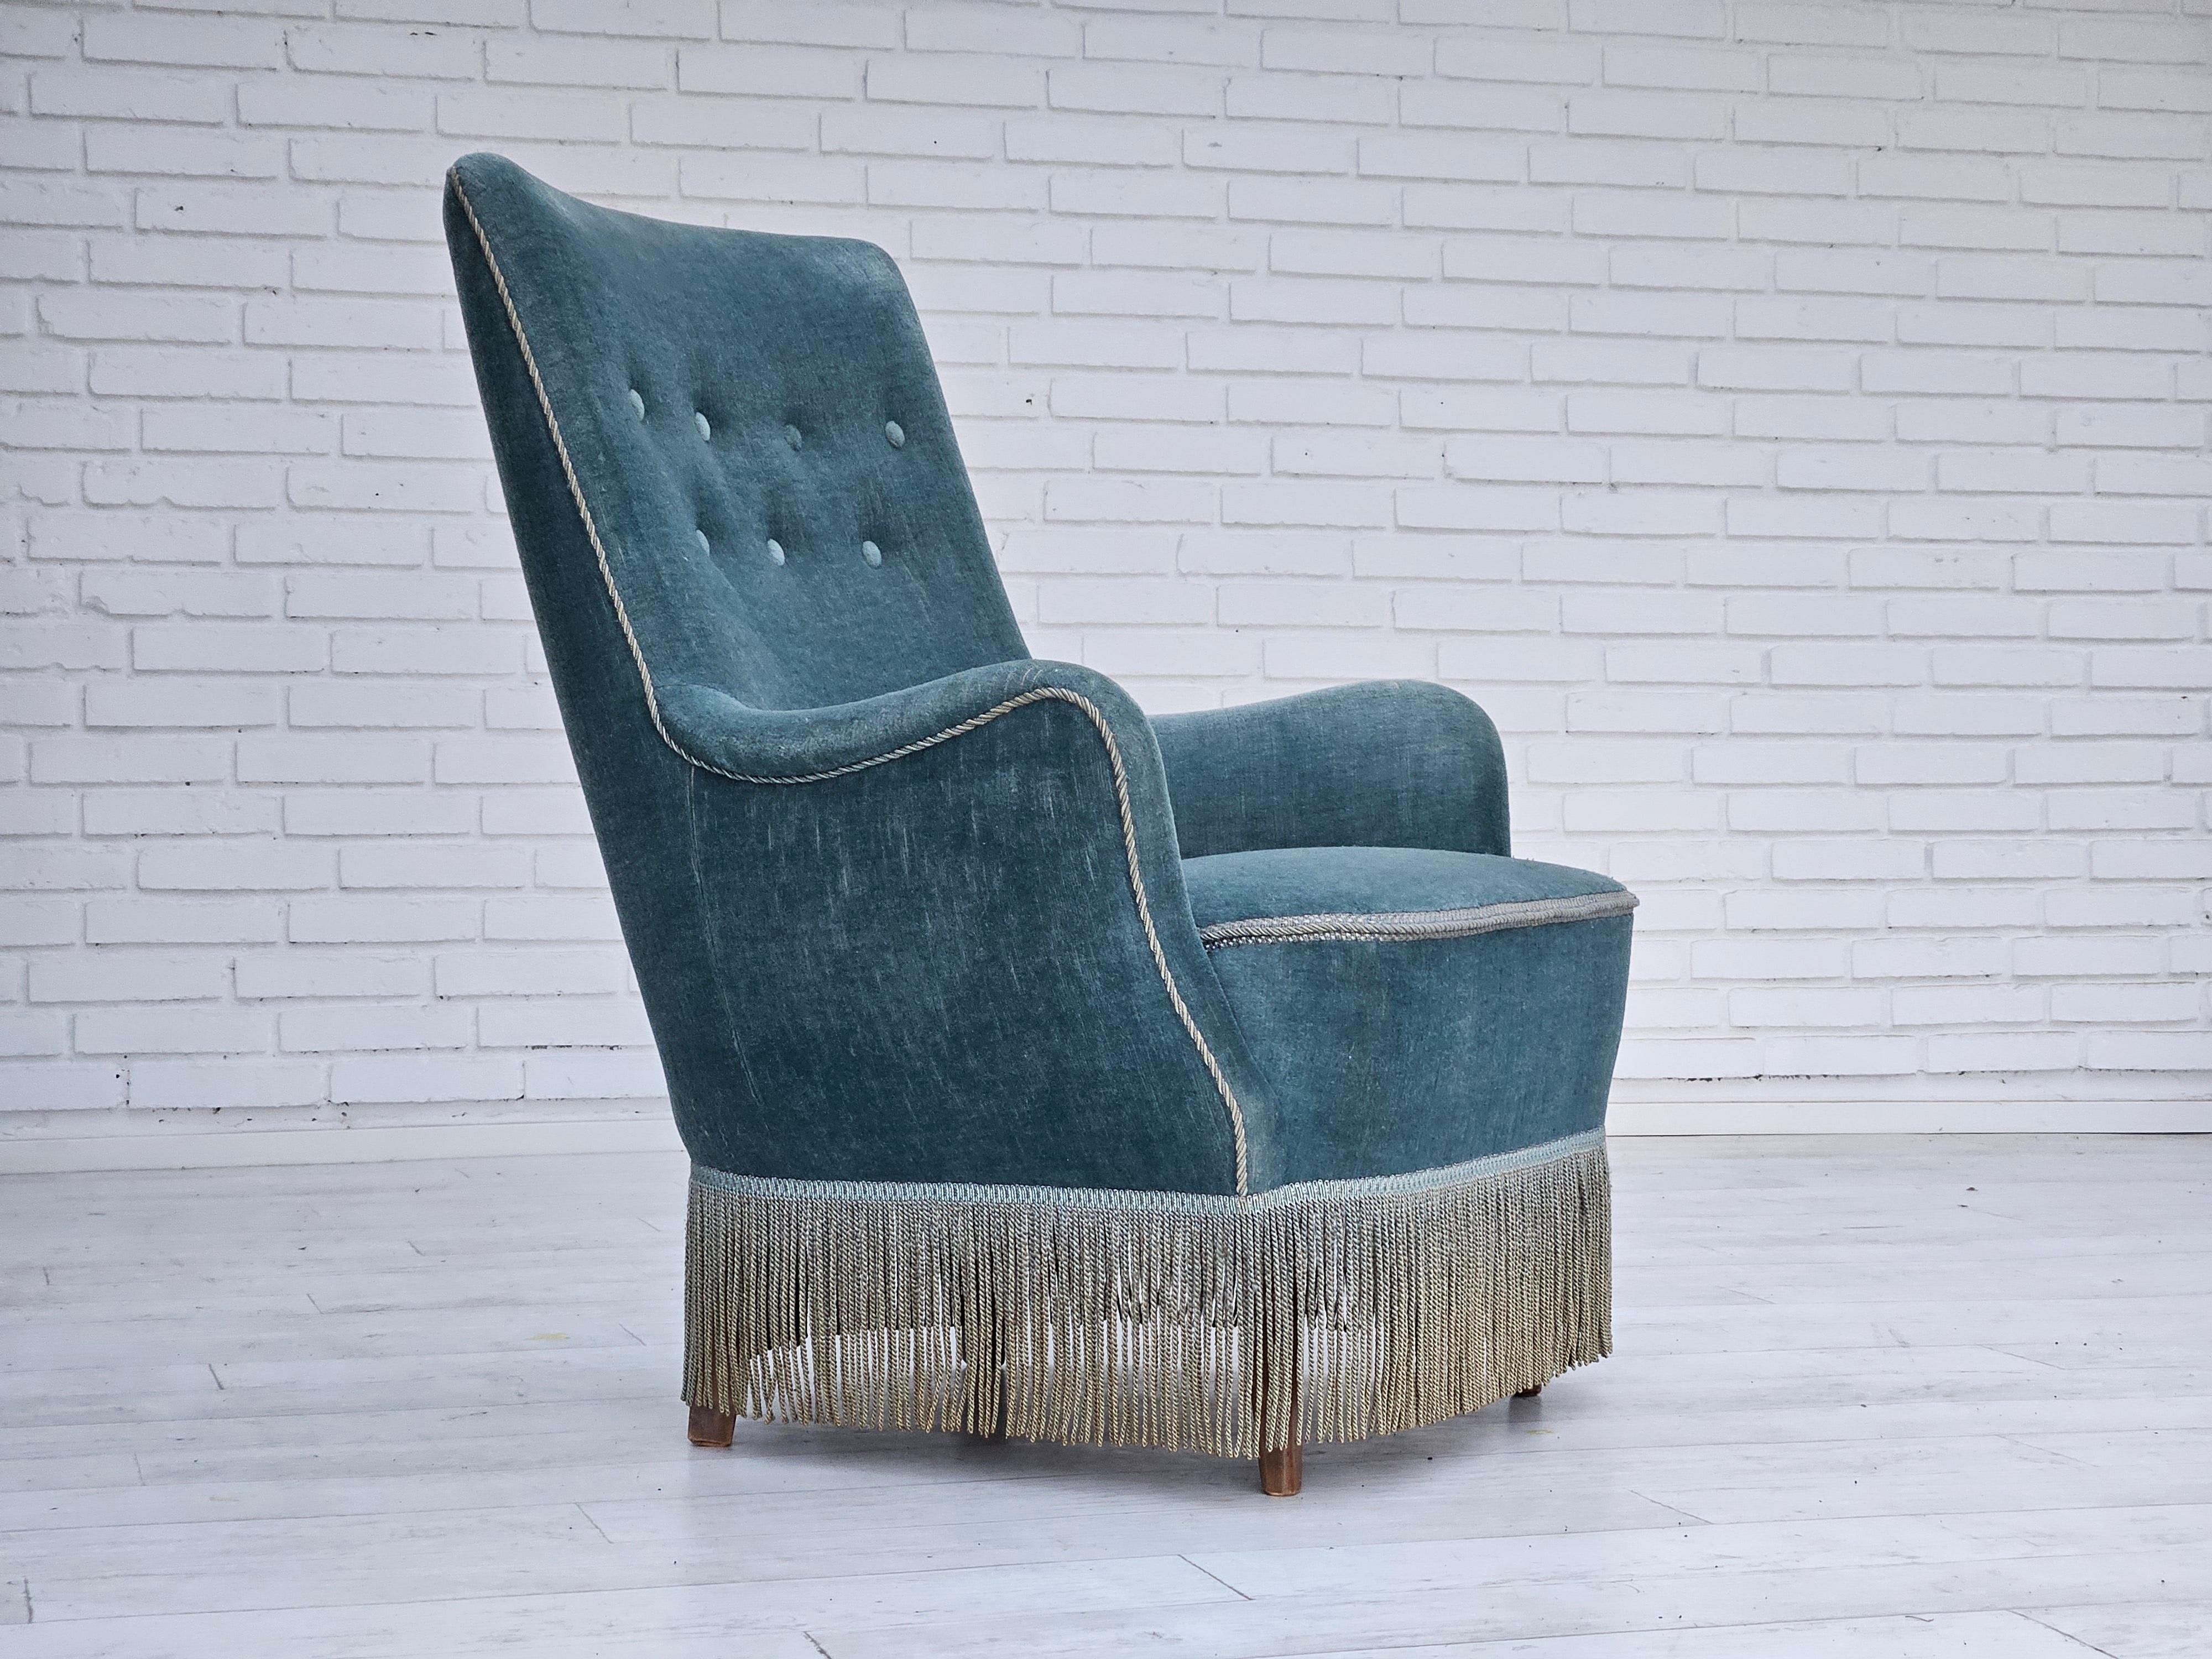  1960er Jahre, dänischer Sessel in original hellblauem Velours. Keine Gerüche und keine Flecken. Beine aus Buchenholz, Federn in der Sitzfläche. Hergestellt von einem dänischen Möbelhersteller in den Jahren um 1960.